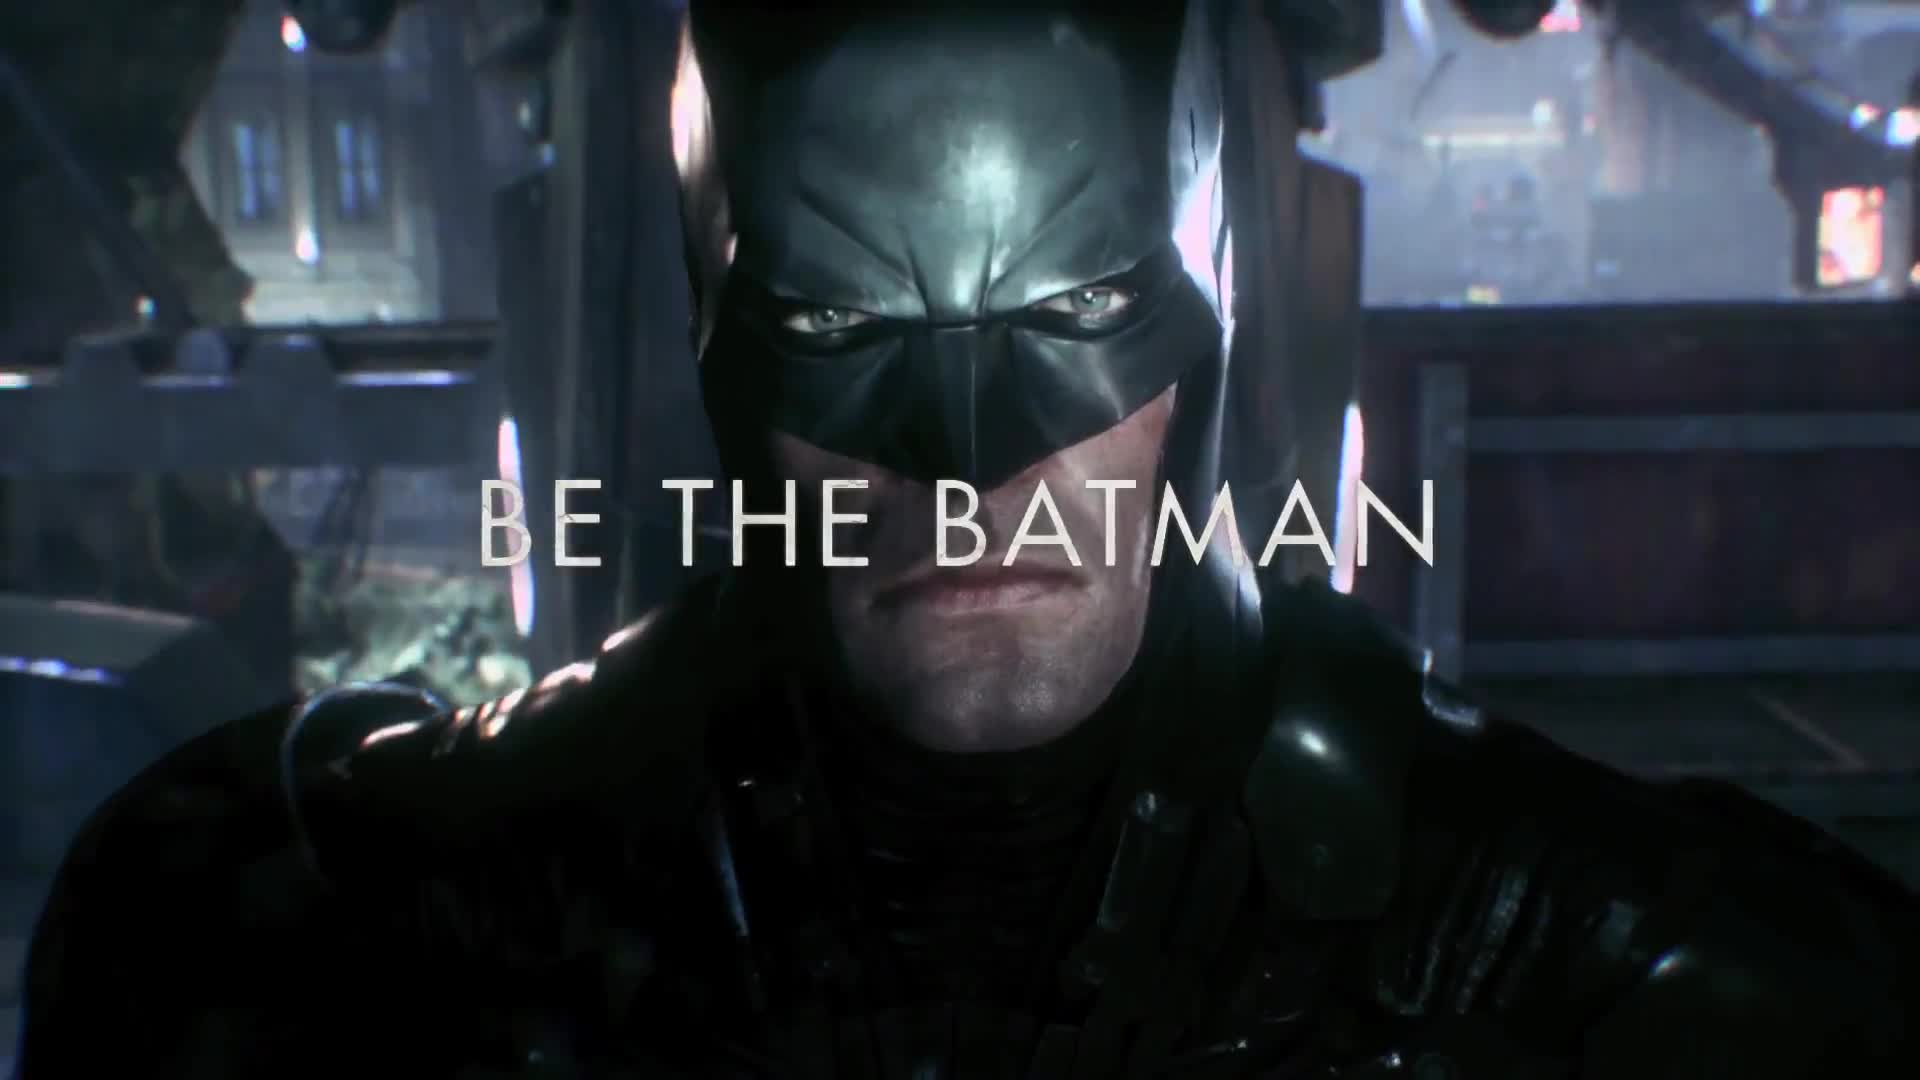 Batman: Arkham Knight - TV Spot